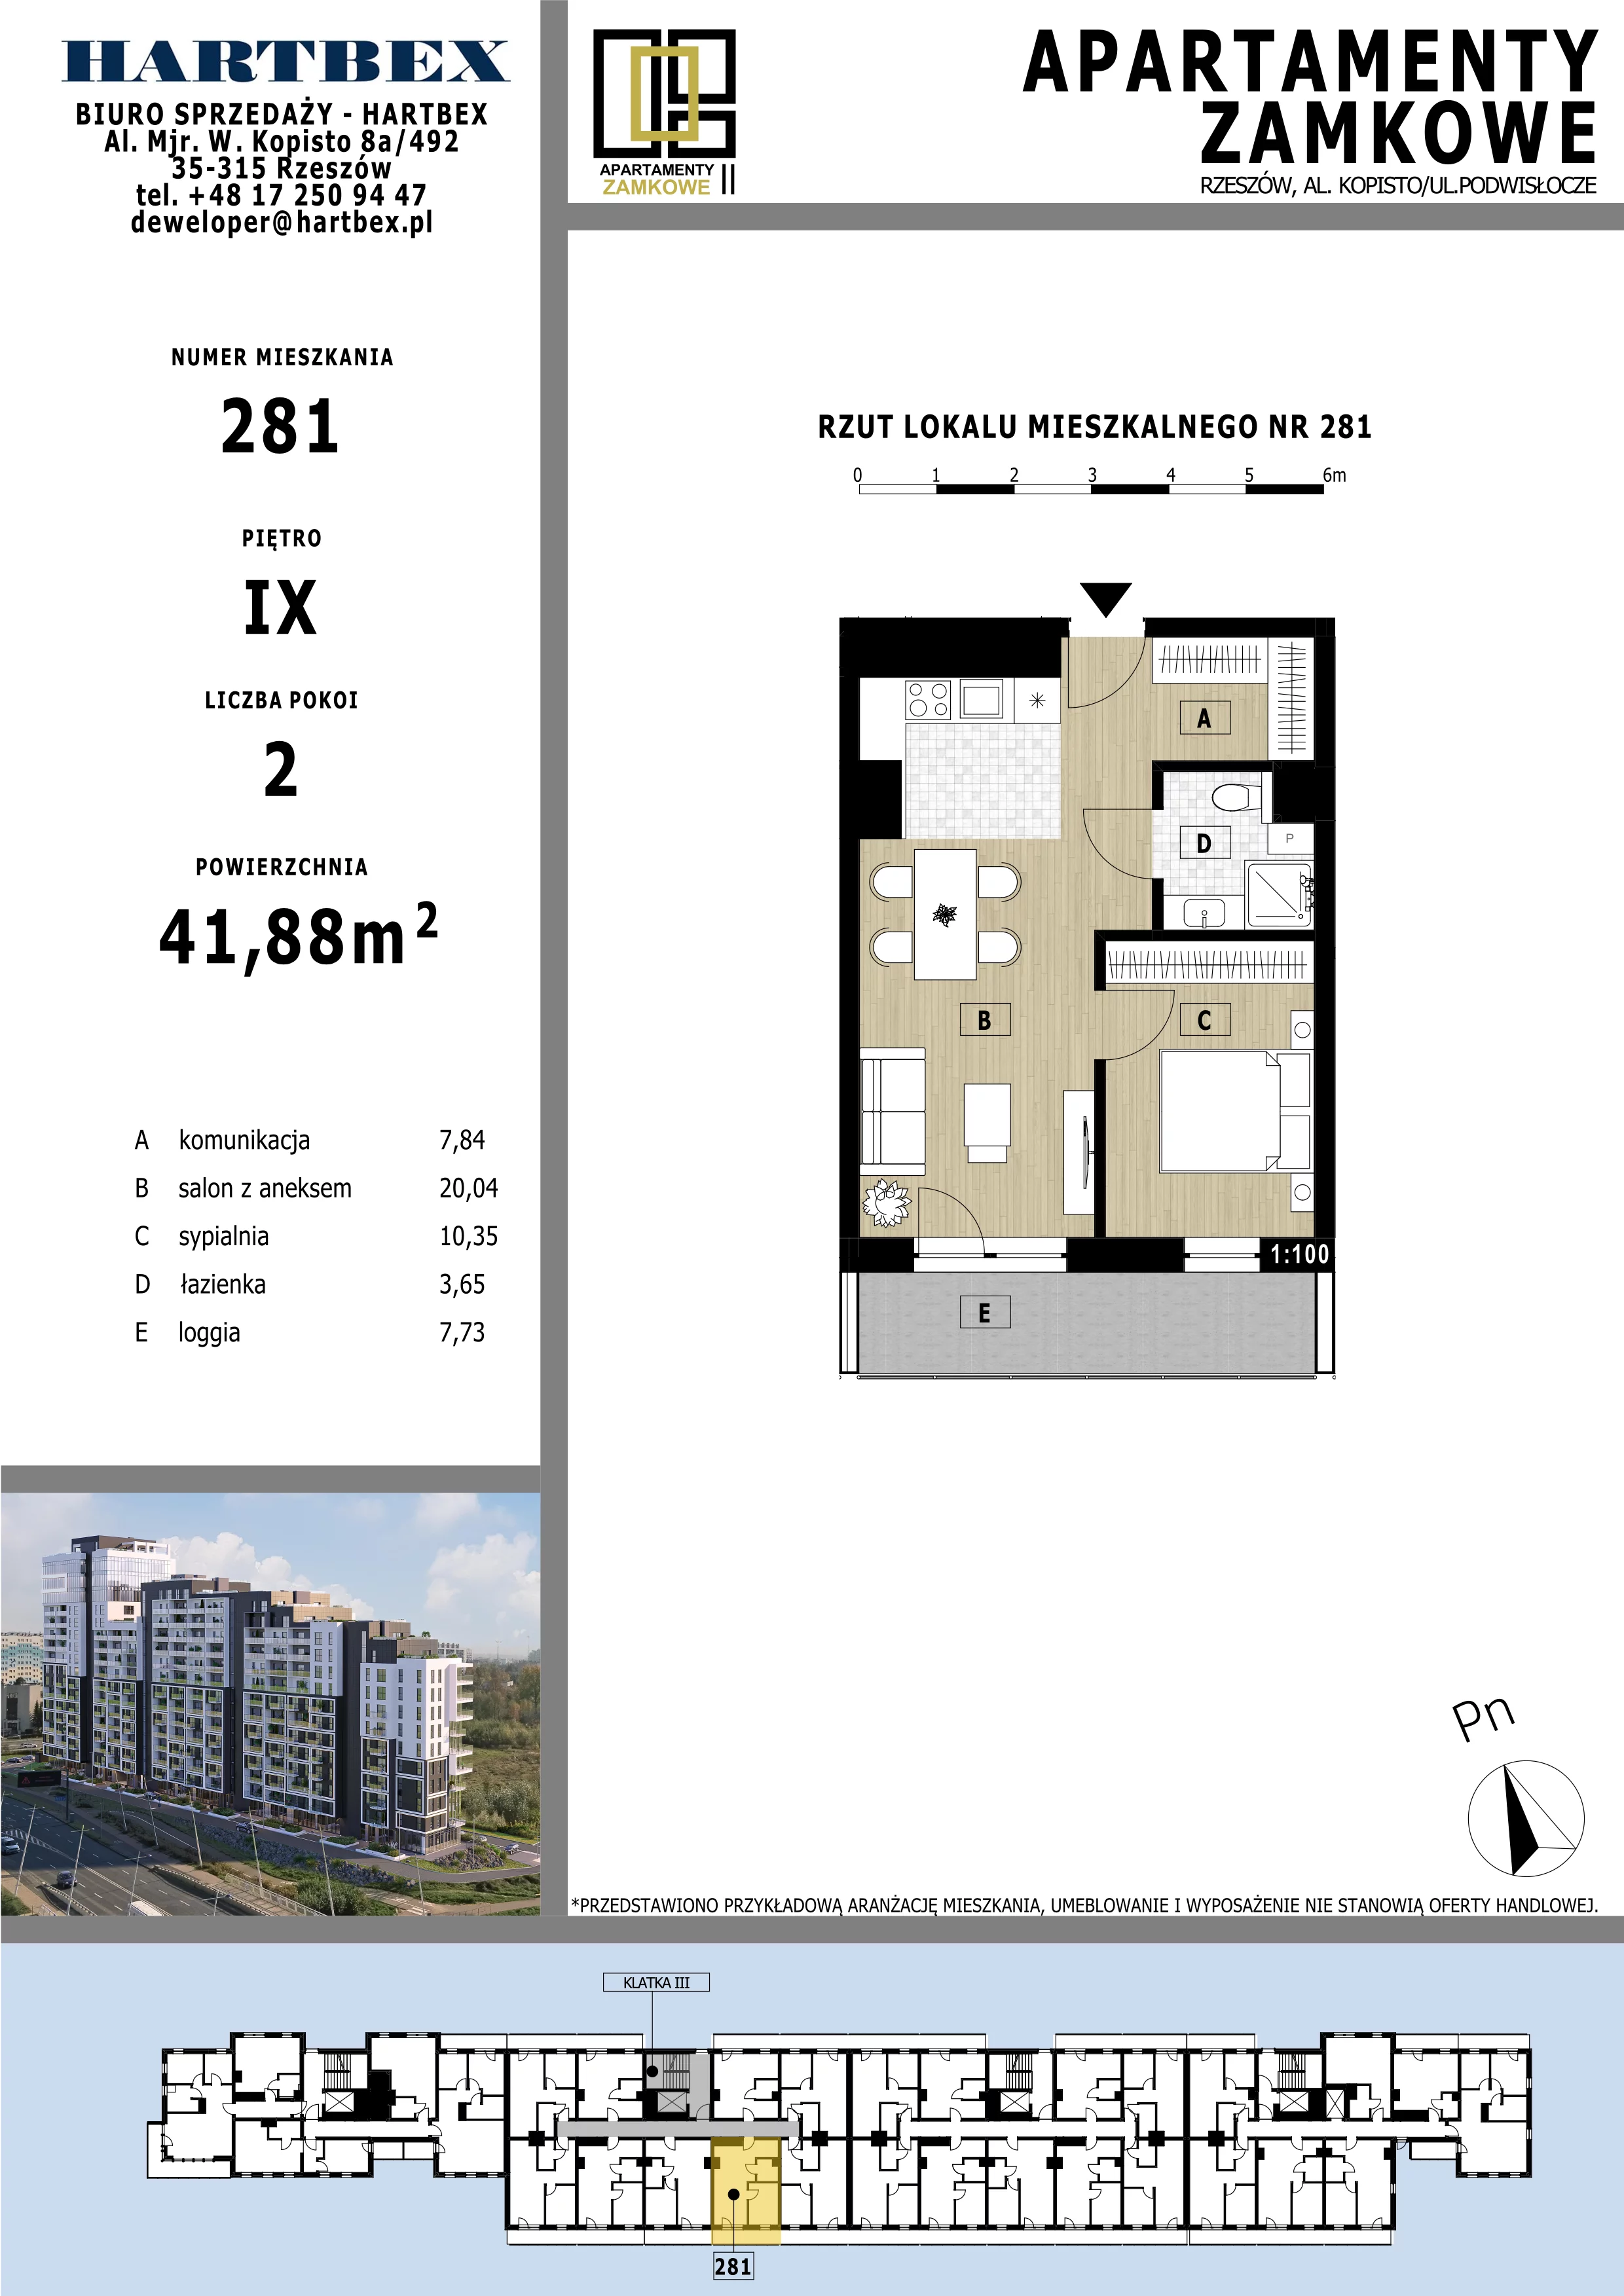 Mieszkanie 41,88 m², piętro 9, oferta nr 281, Apartamenty Zamkowe II, Rzeszów, Nowe Miasto, al. mjr W. Kopisto 11